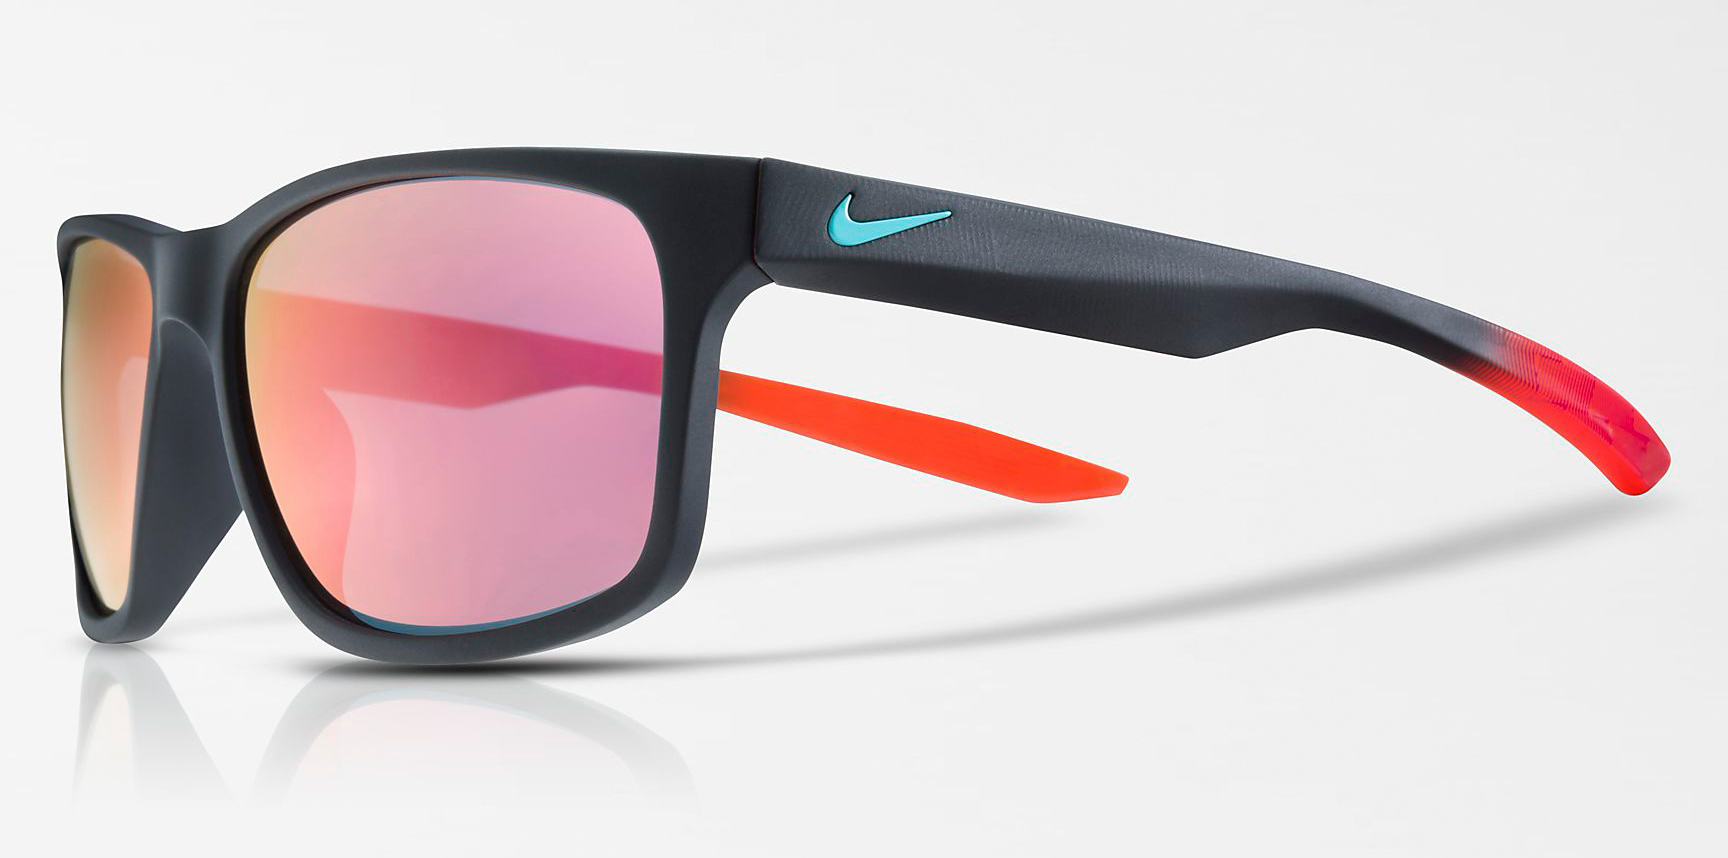 nike-air-max-97-south-beach-sunglasses-match-1